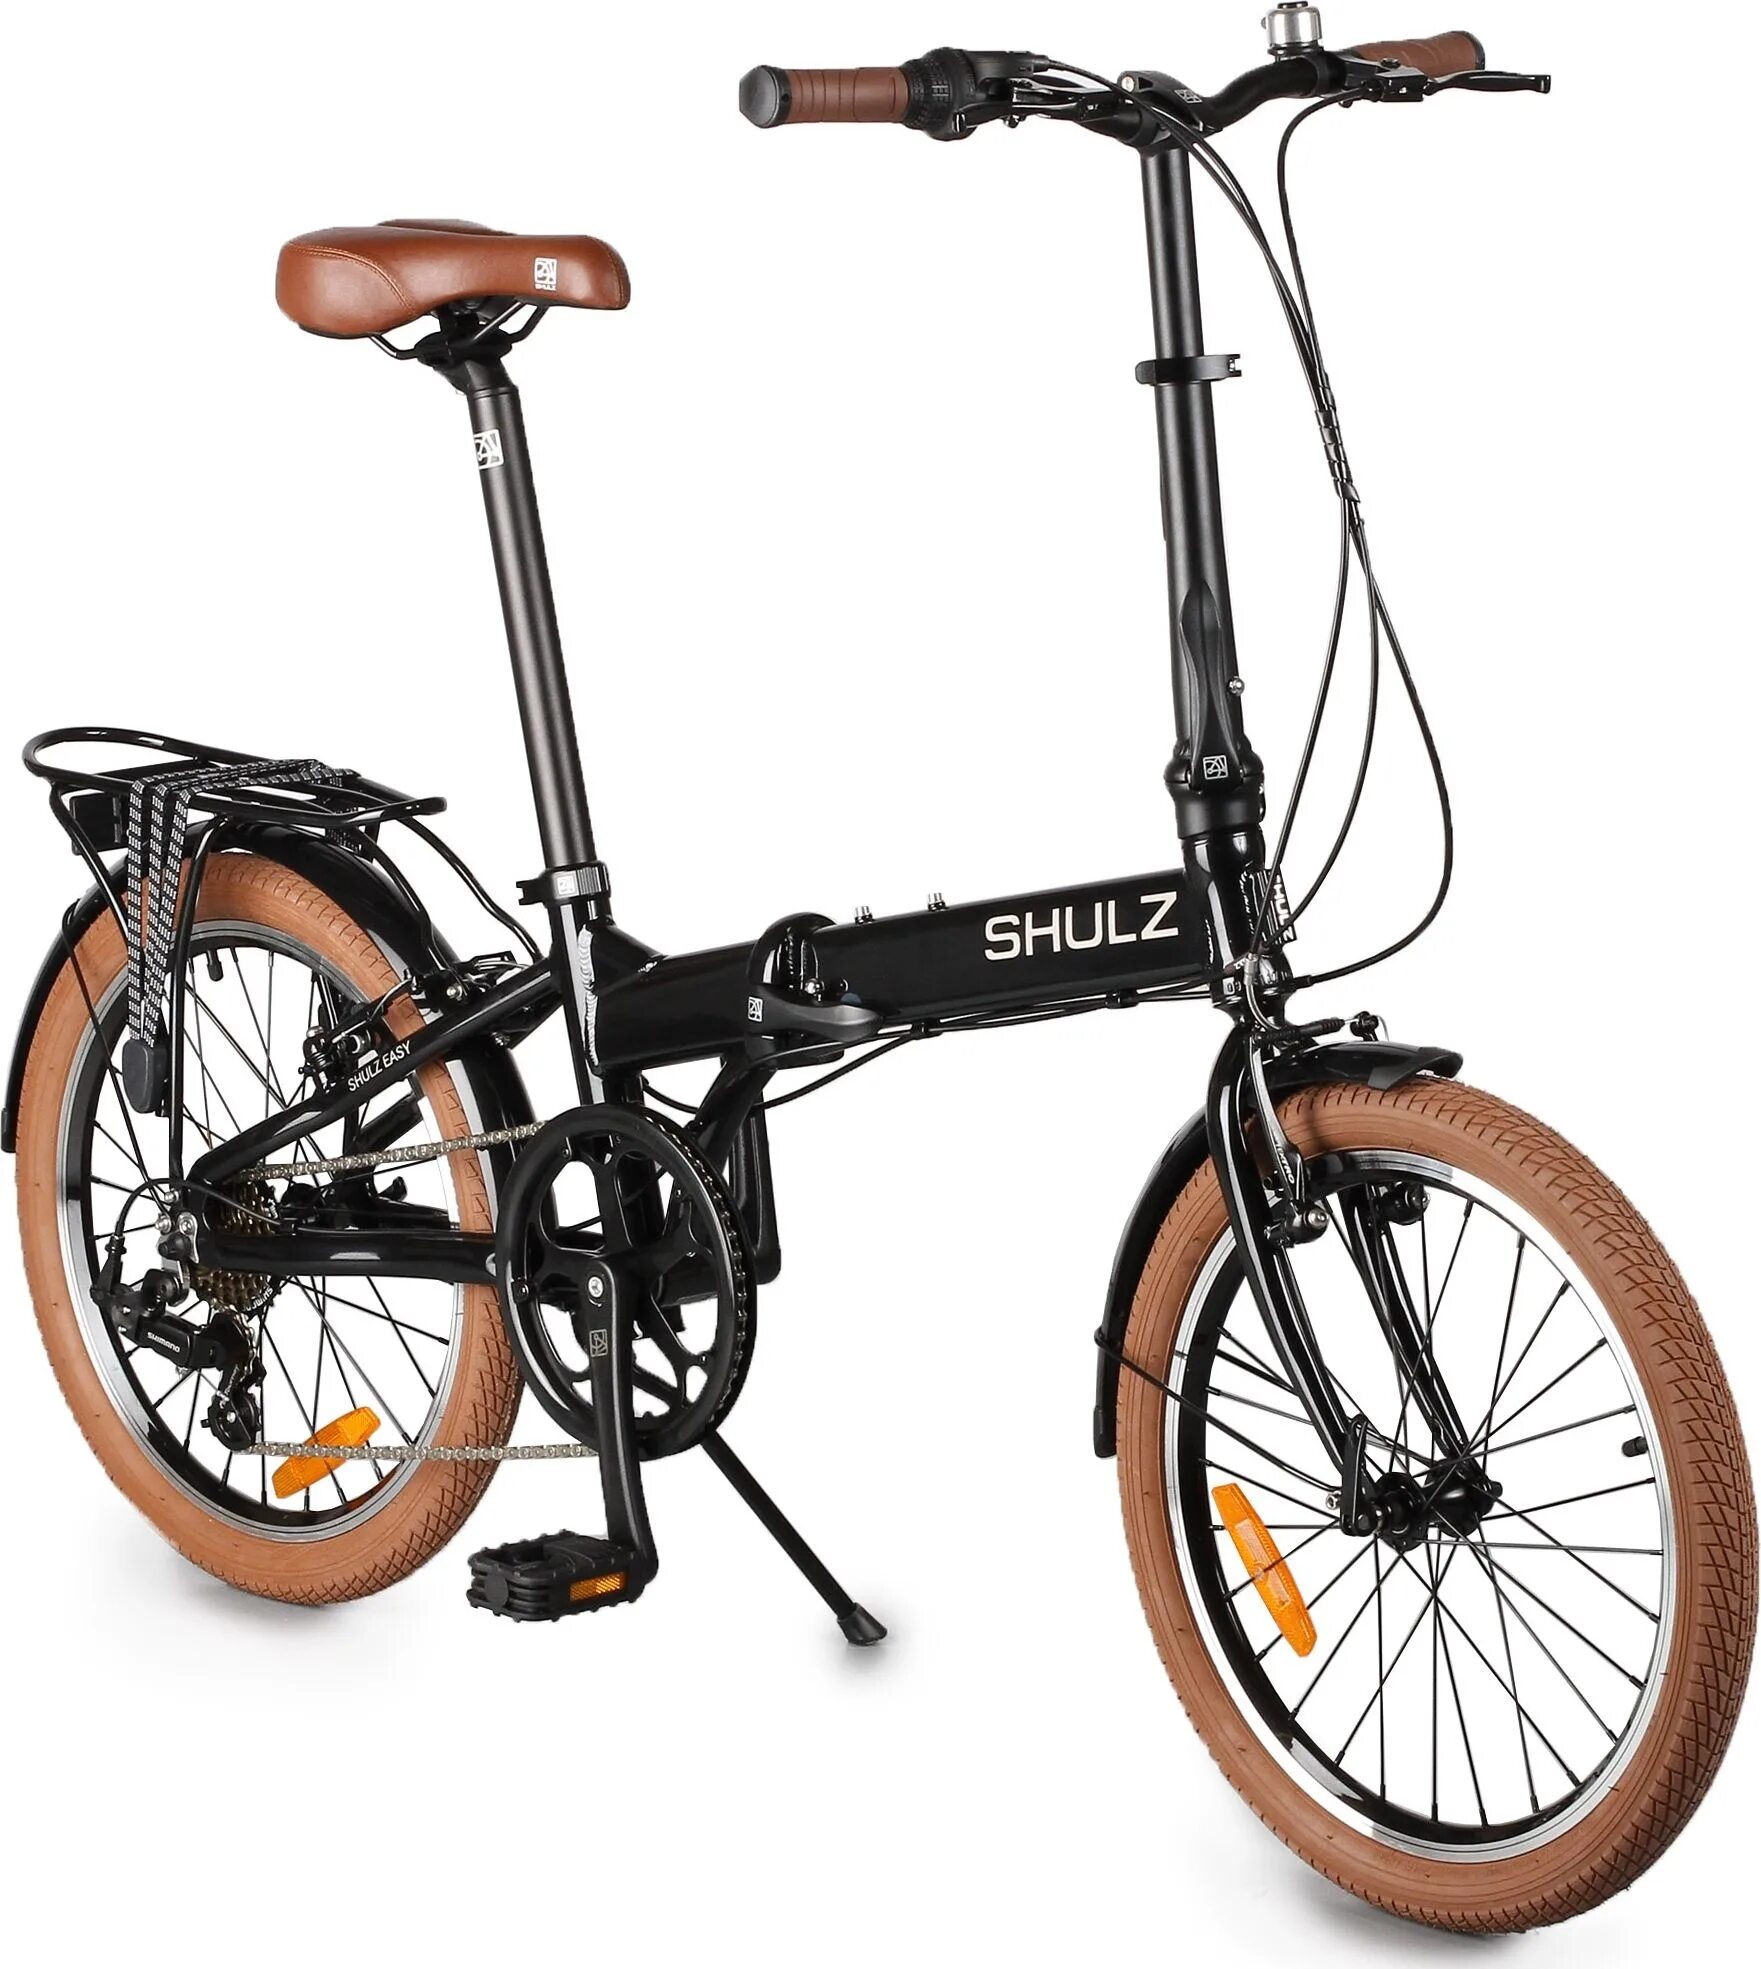 Велосипеды шульц складные купить. Городской велосипед Shulz easy. Складной велосипед Shulz easy. Городской велосипед Shulz Lentus. Велосипед Шульц складной алюминиевый.